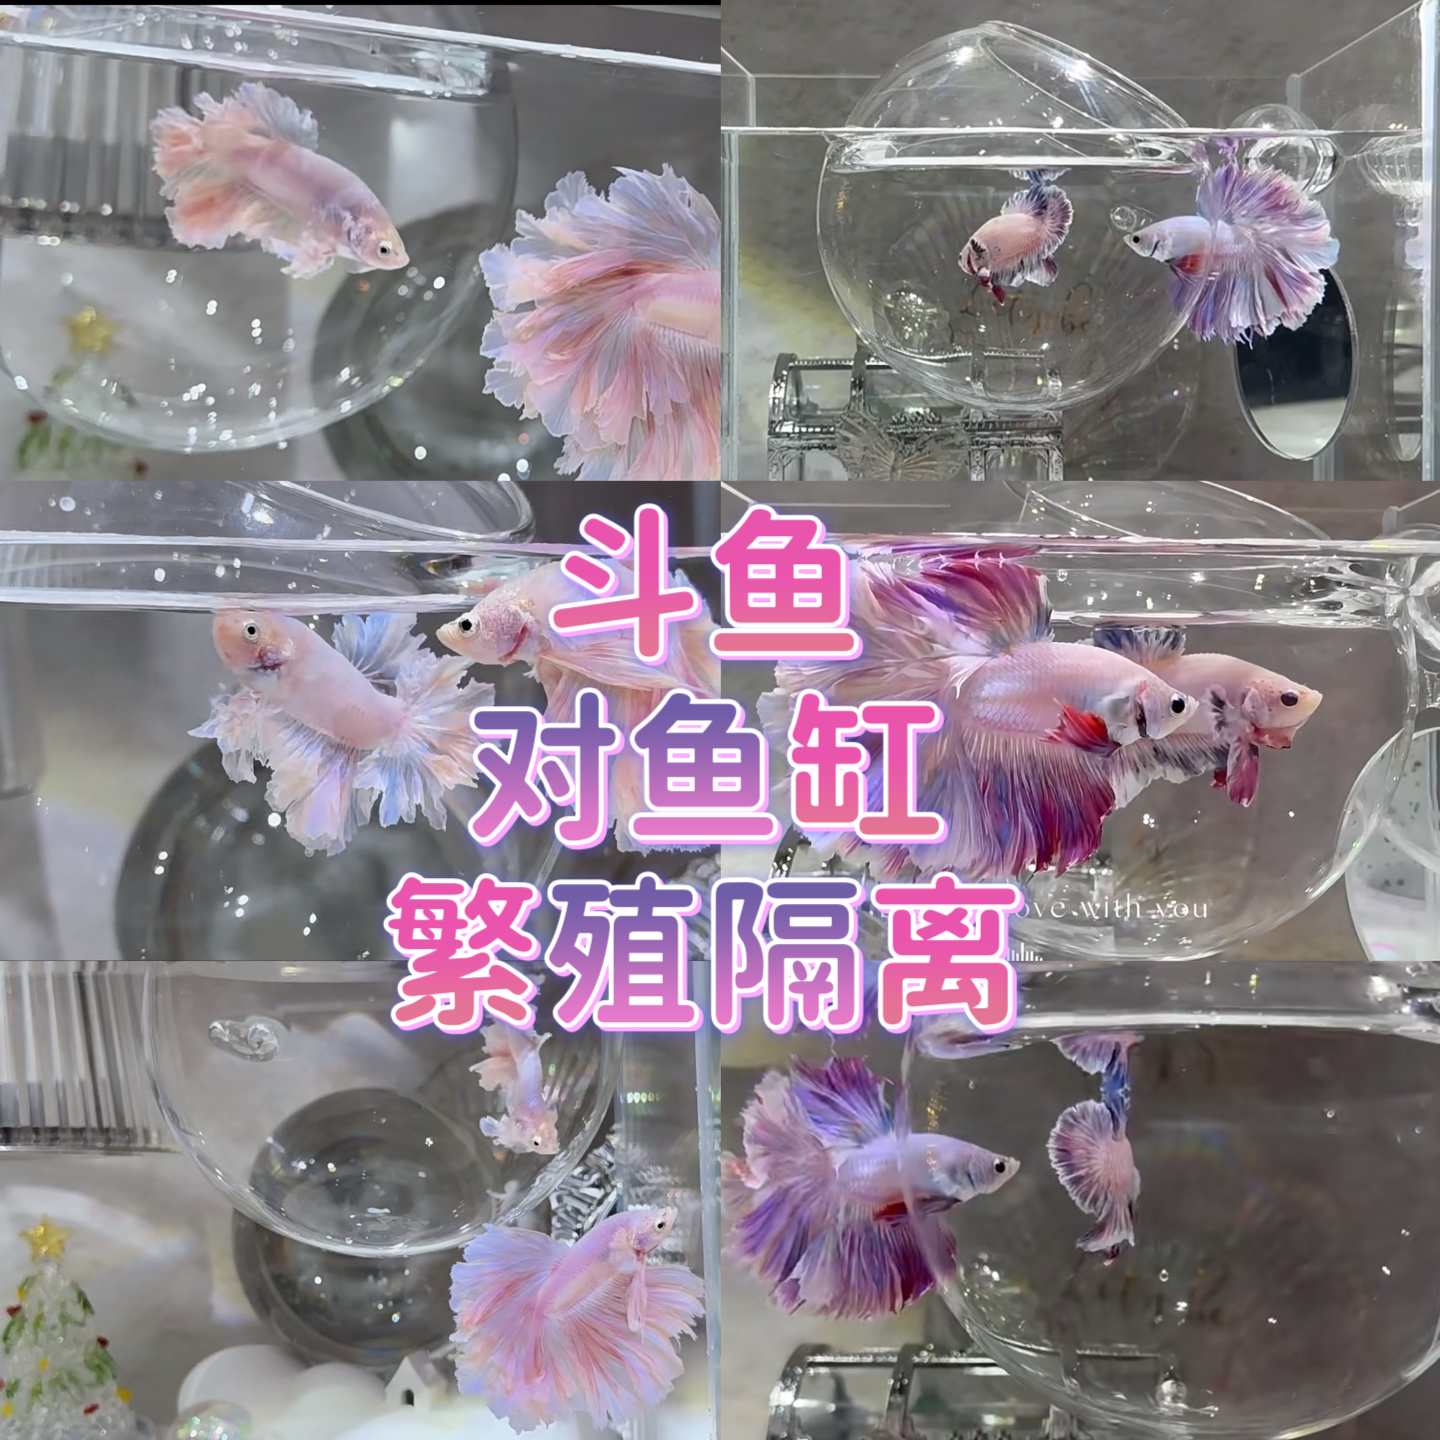 泰国斗鱼繁殖罐对母鱼隔离超白玻璃缸内防互斗对视展尾训练镜造景